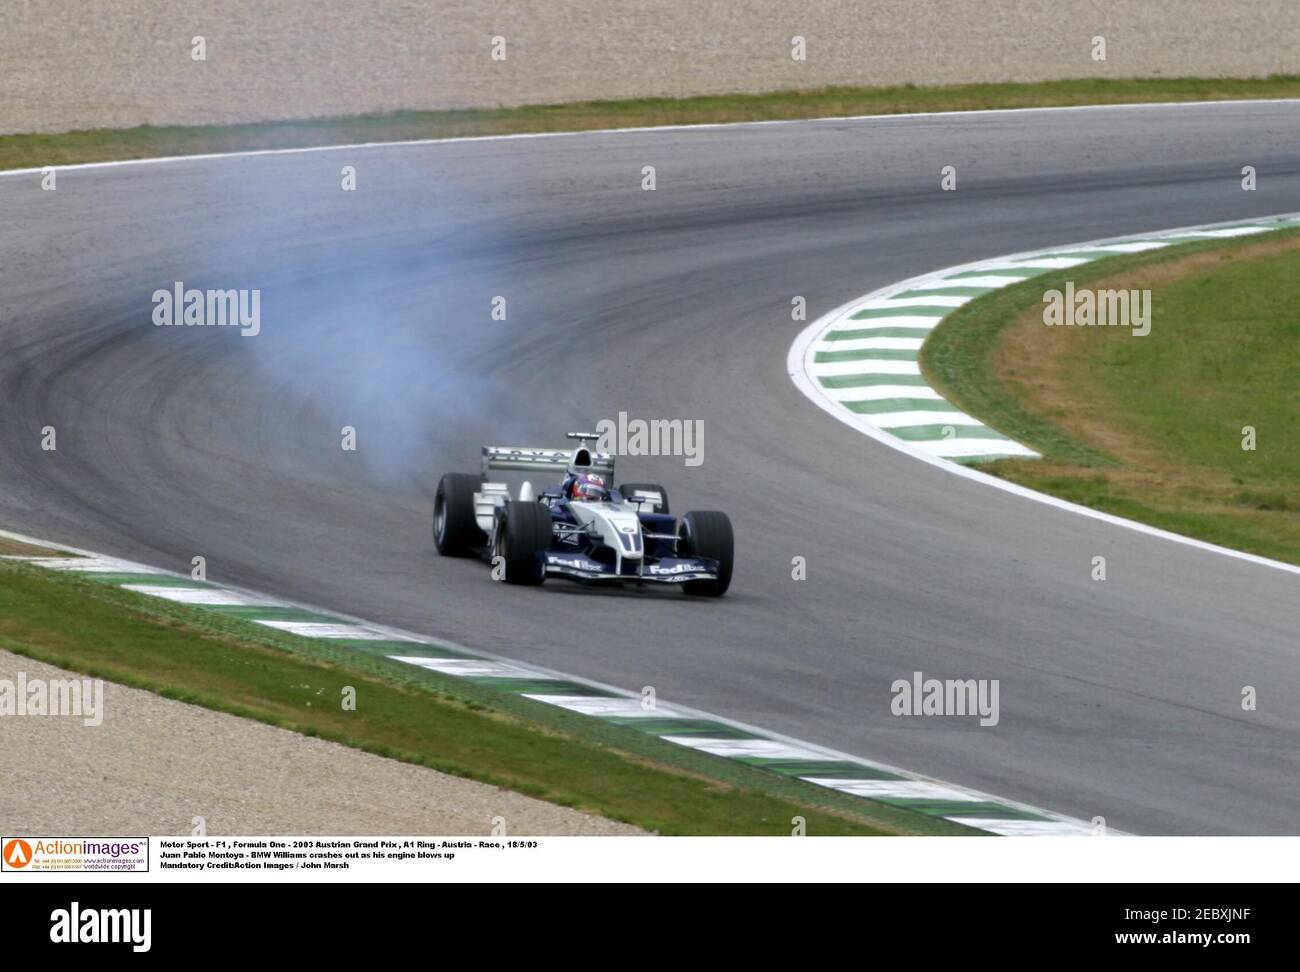 Motor Sport - F1 , Formula One - 2003 Austrian Grand Prix , A1 Ring -  Austria - Race , 18/5/03